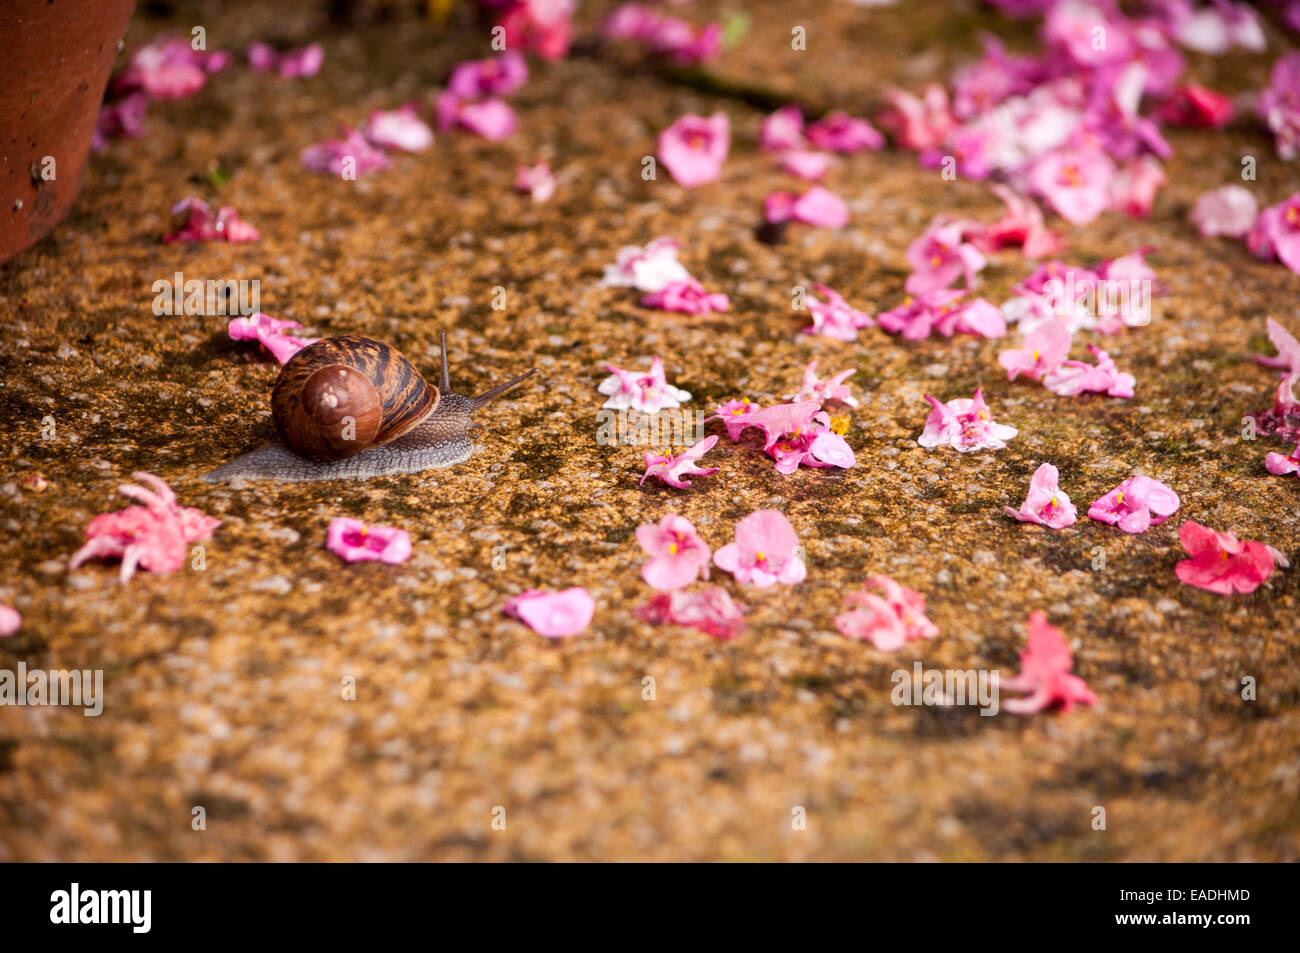 Snail among petals Stock Photo